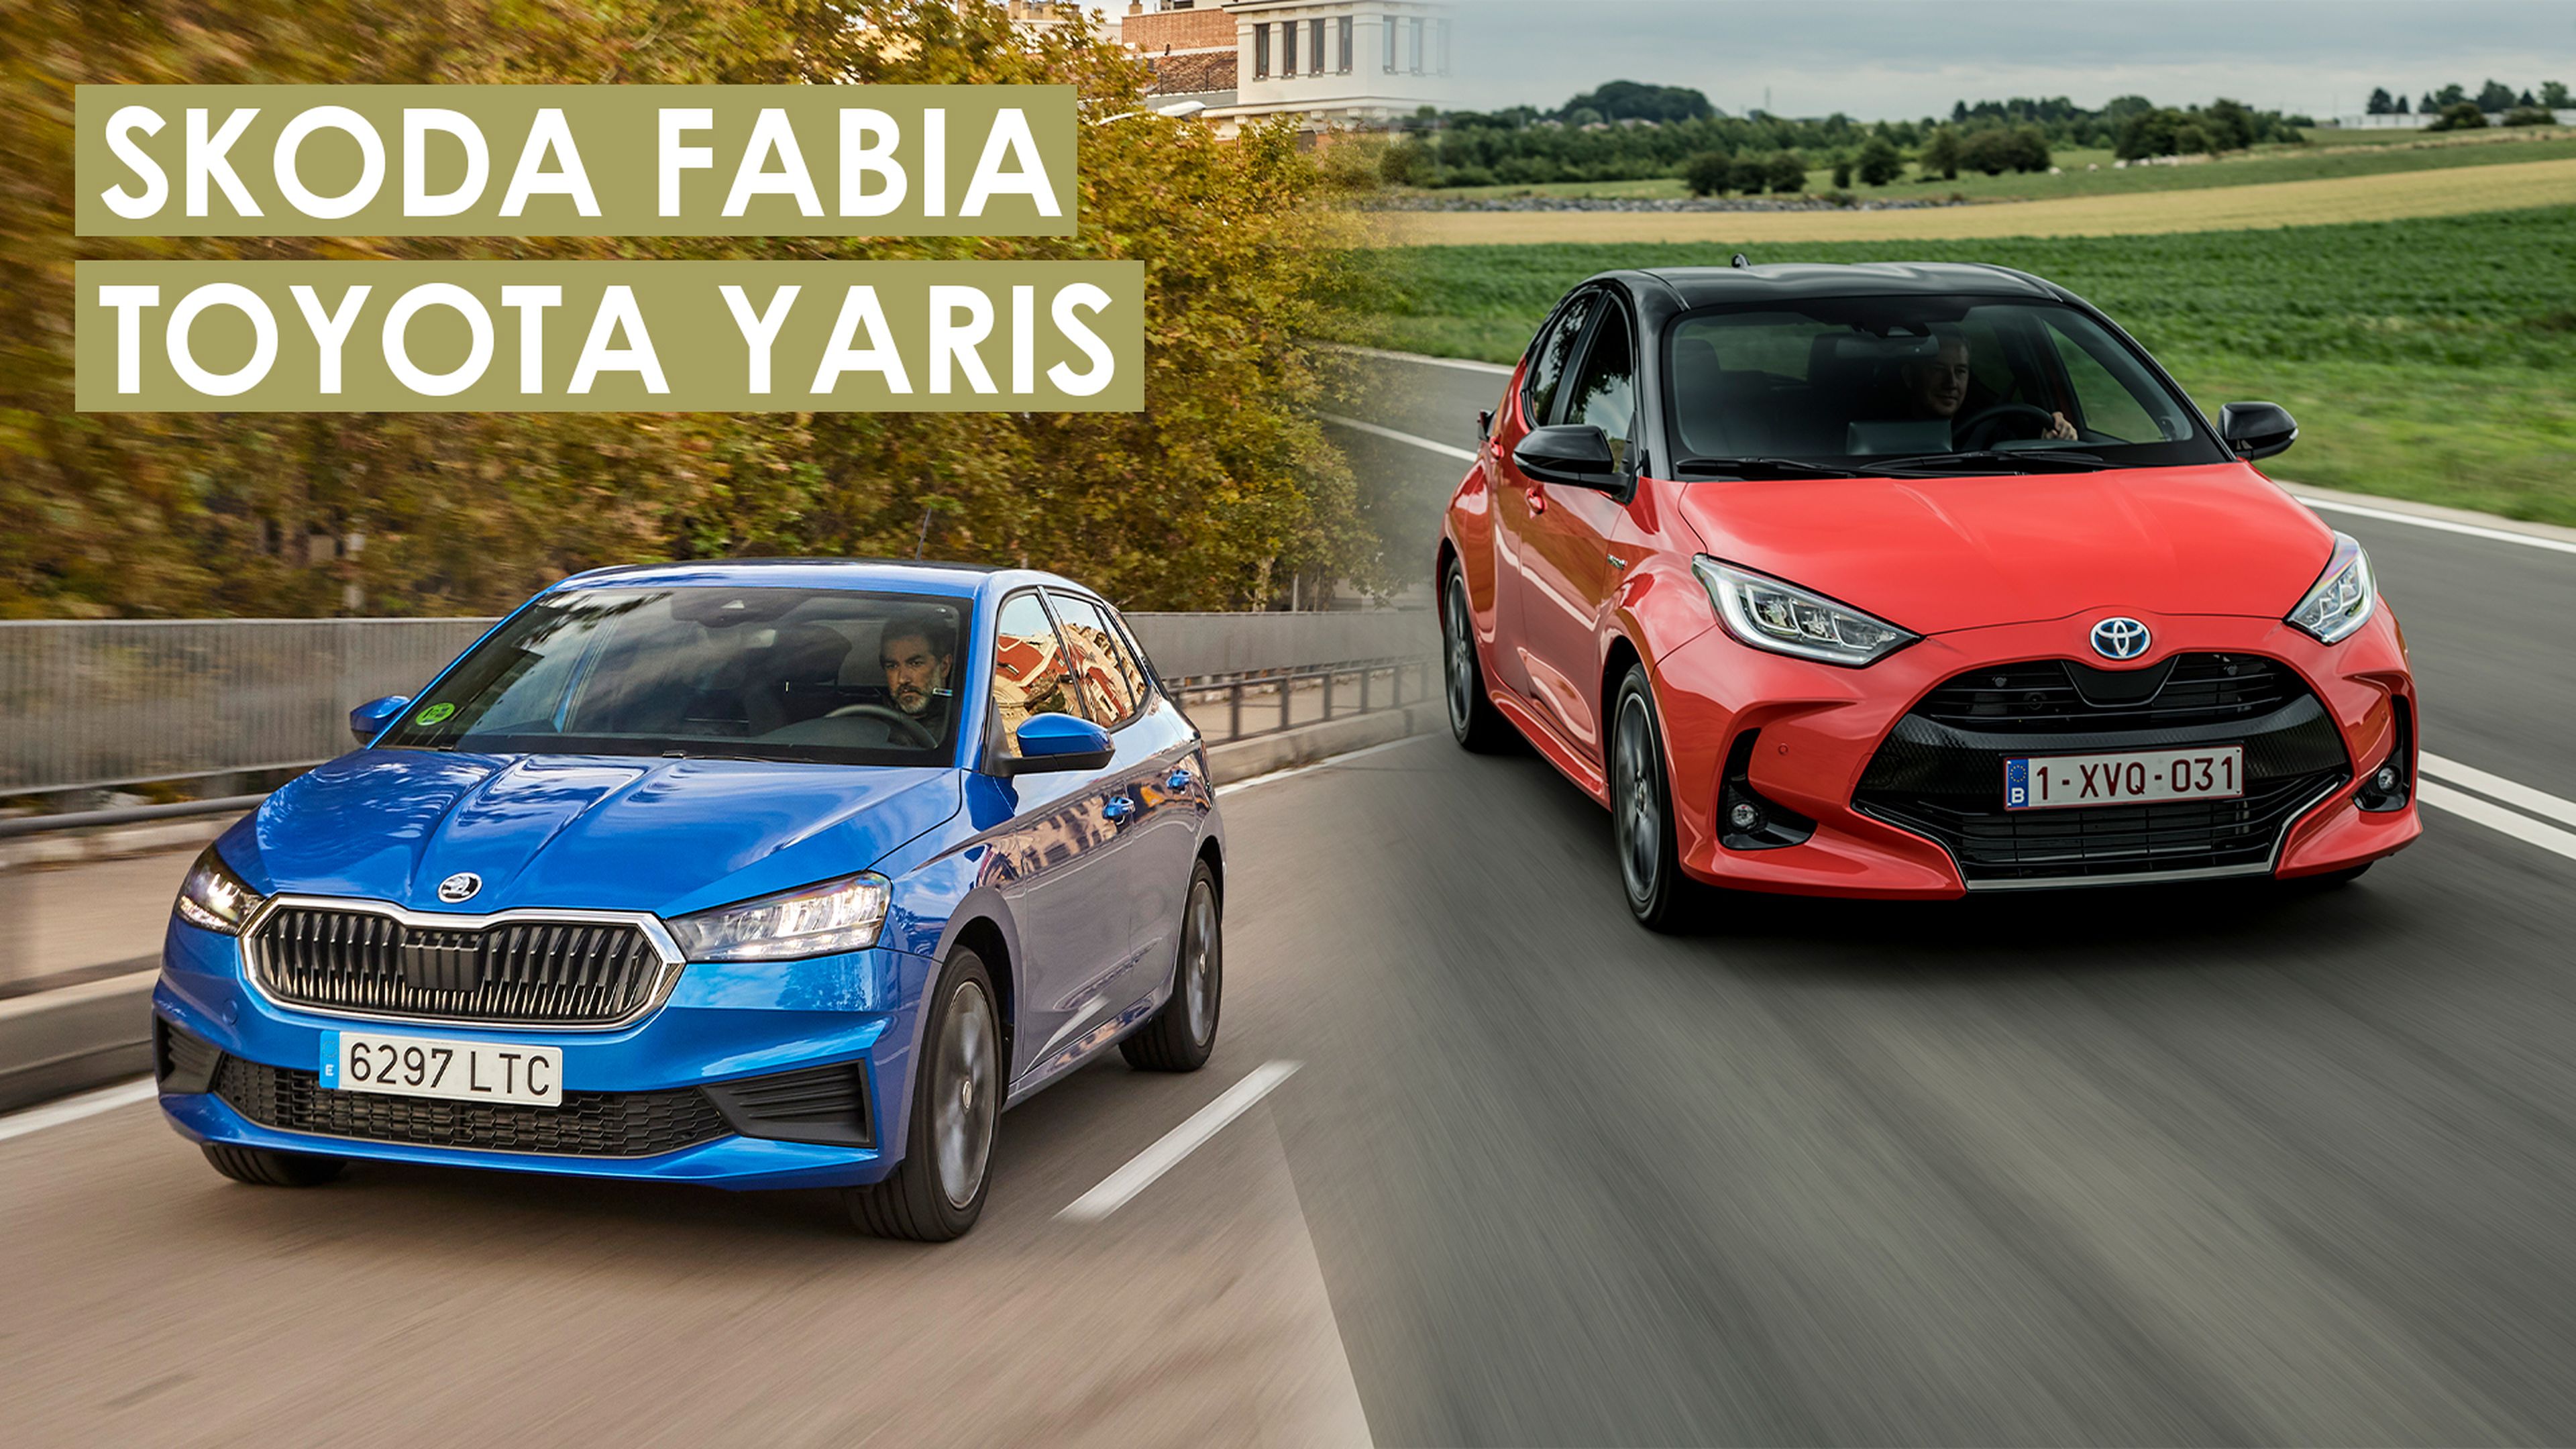 Skoda Fabia vs Toyota Yaris